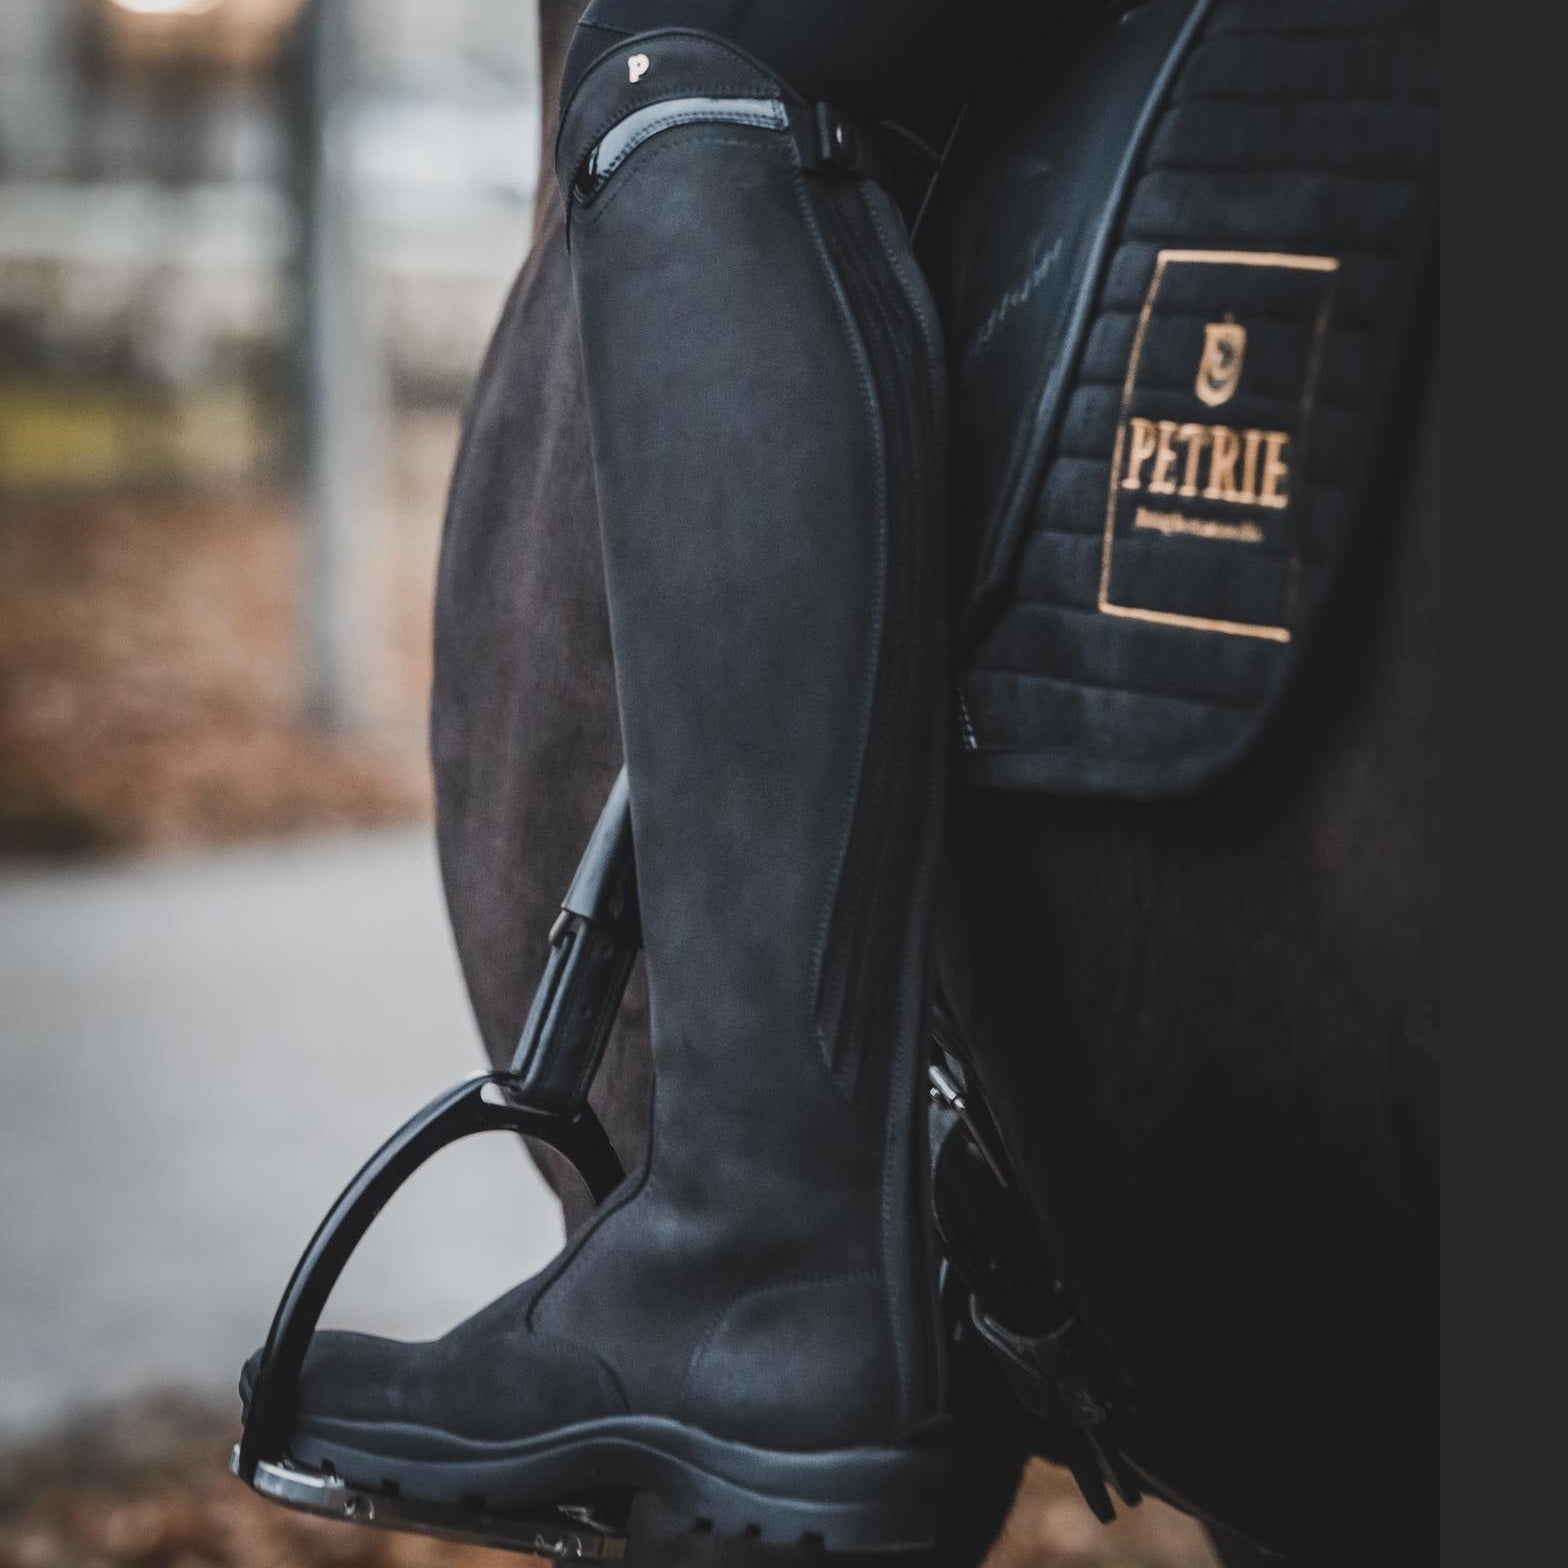 Petrie – Bottes Explorer Noir à cheval | Sellerie Bucéphale